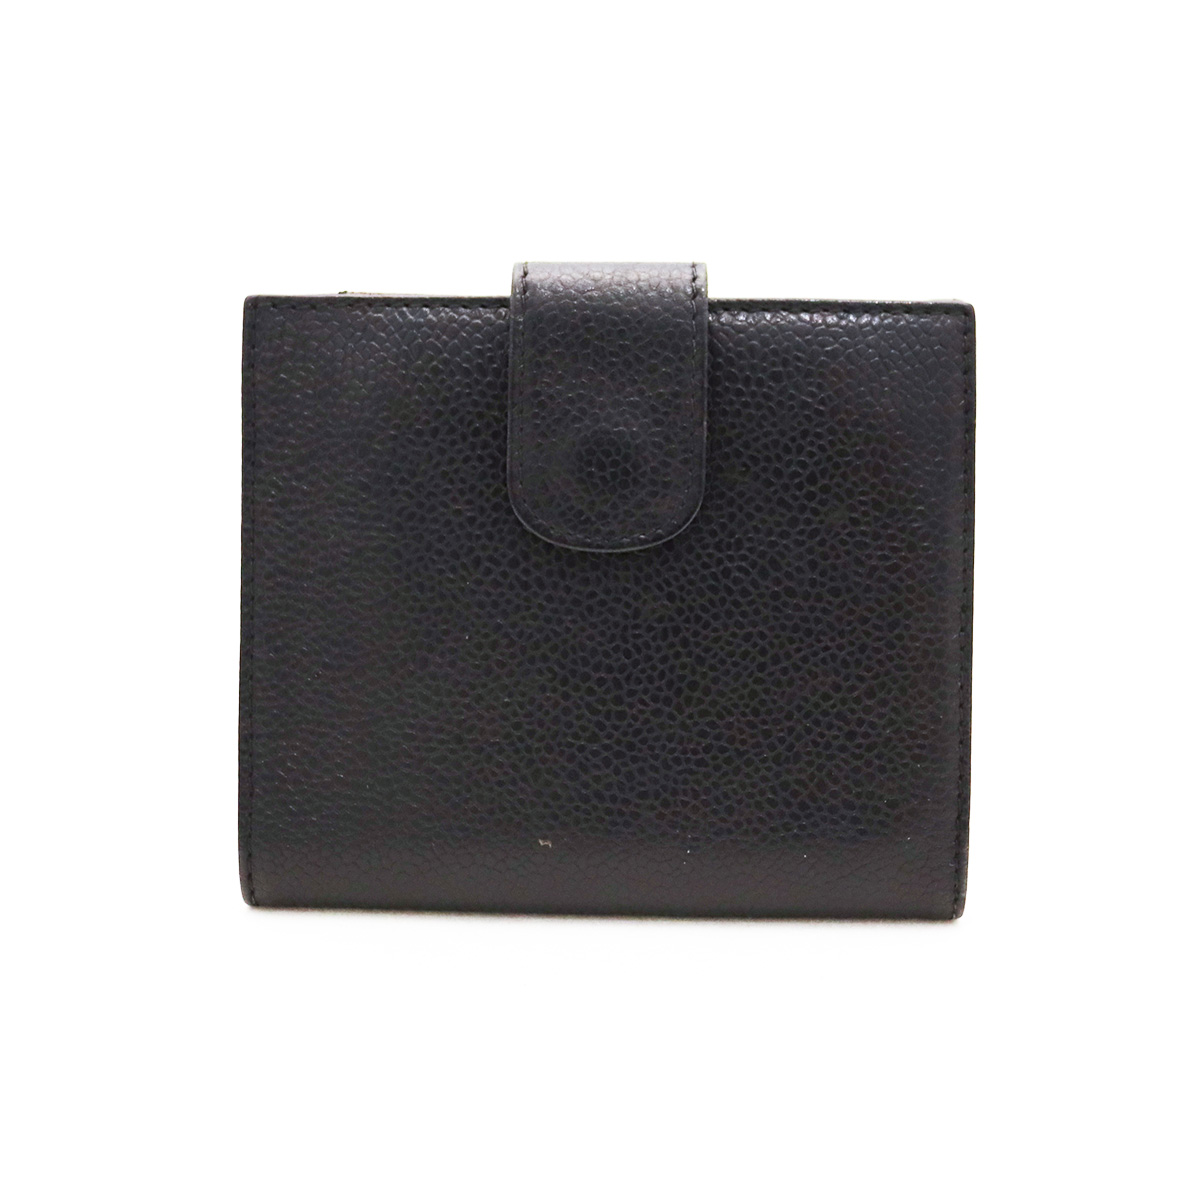 シャネル(CHANEL) 二つ折りWホック財布 キャビアスキン 黒 ブラック